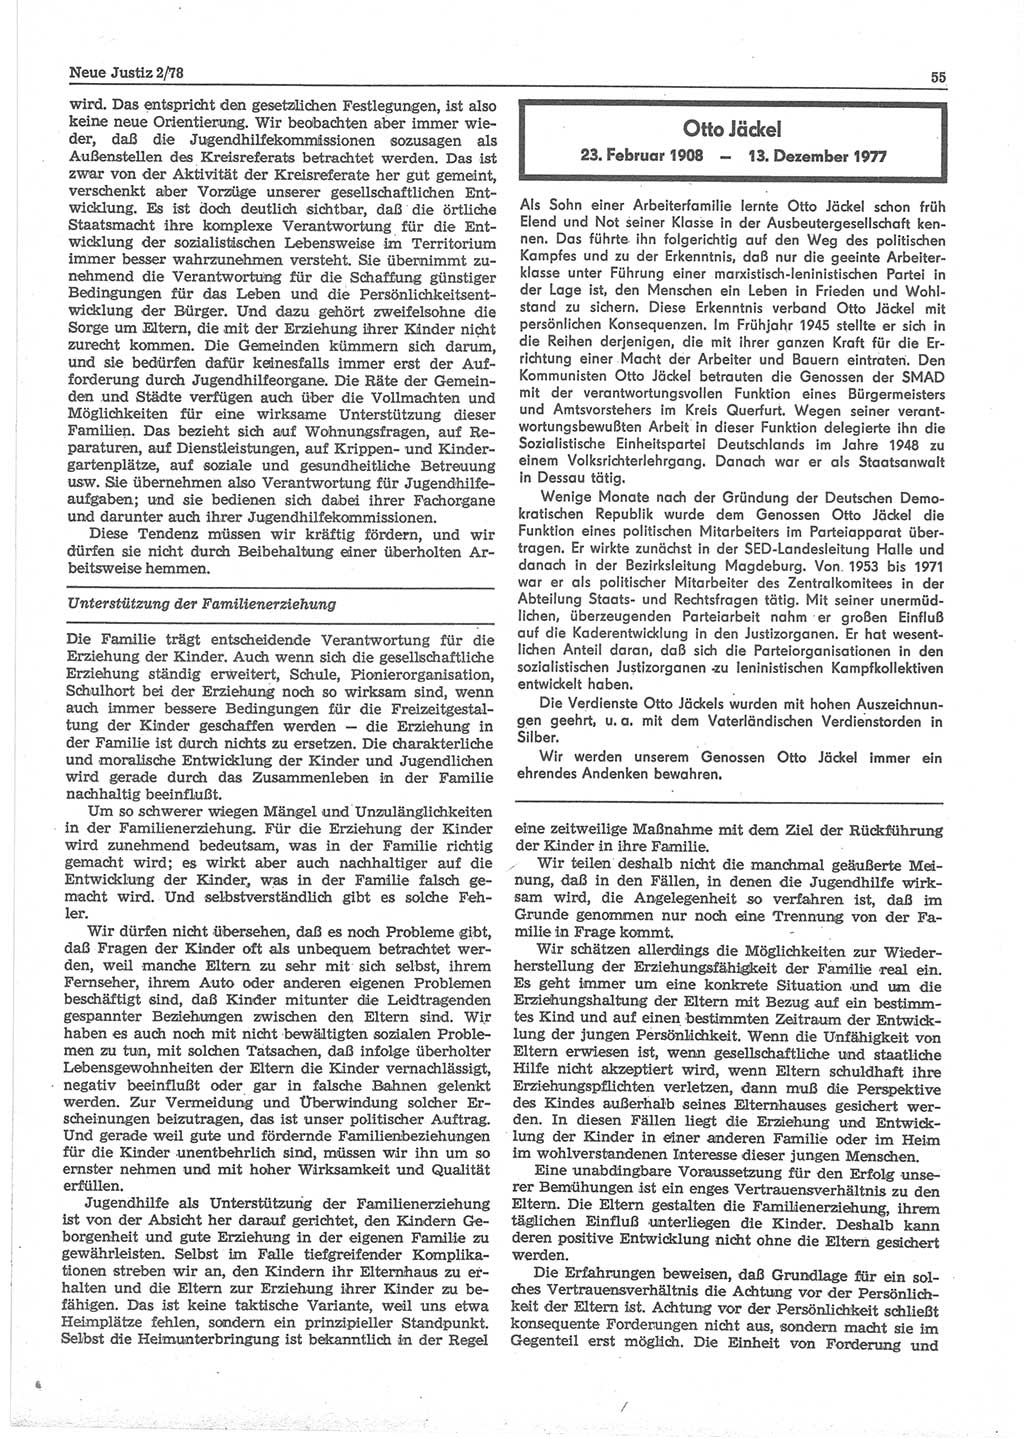 Neue Justiz (NJ), Zeitschrift für sozialistisches Recht und Gesetzlichkeit [Deutsche Demokratische Republik (DDR)], 32. Jahrgang 1978, Seite 55 (NJ DDR 1978, S. 55)